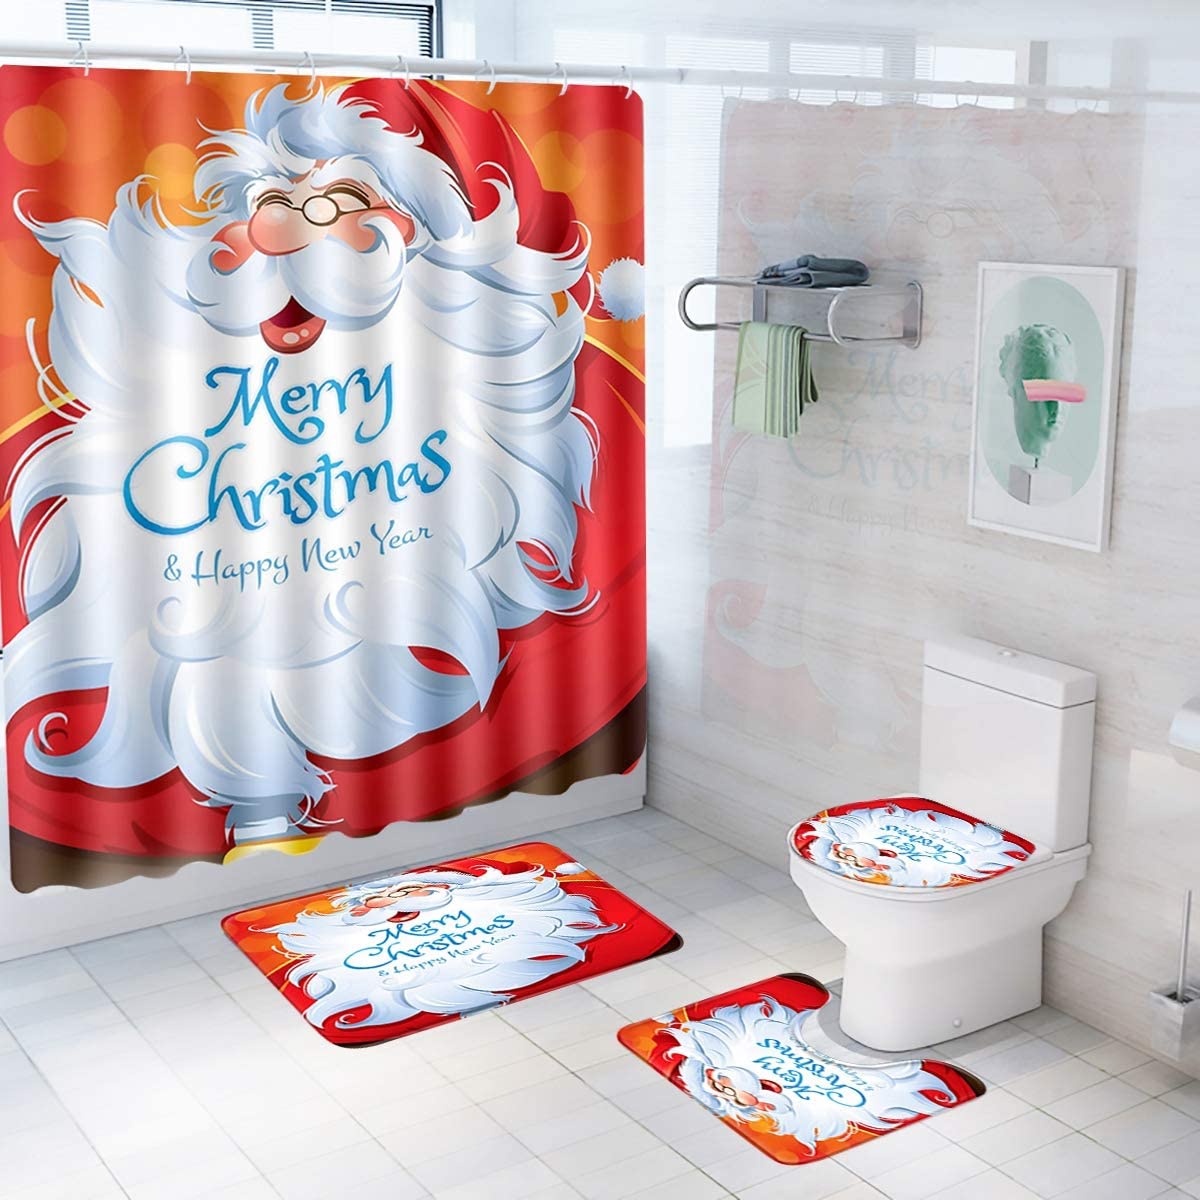 Decorazioni natalizie Accessori per il bagno Set di decorazioni tra cui tenda da doccia natalizia, tappetini da bagno antiscivolo, tappetino sagomato, coprisedile del water